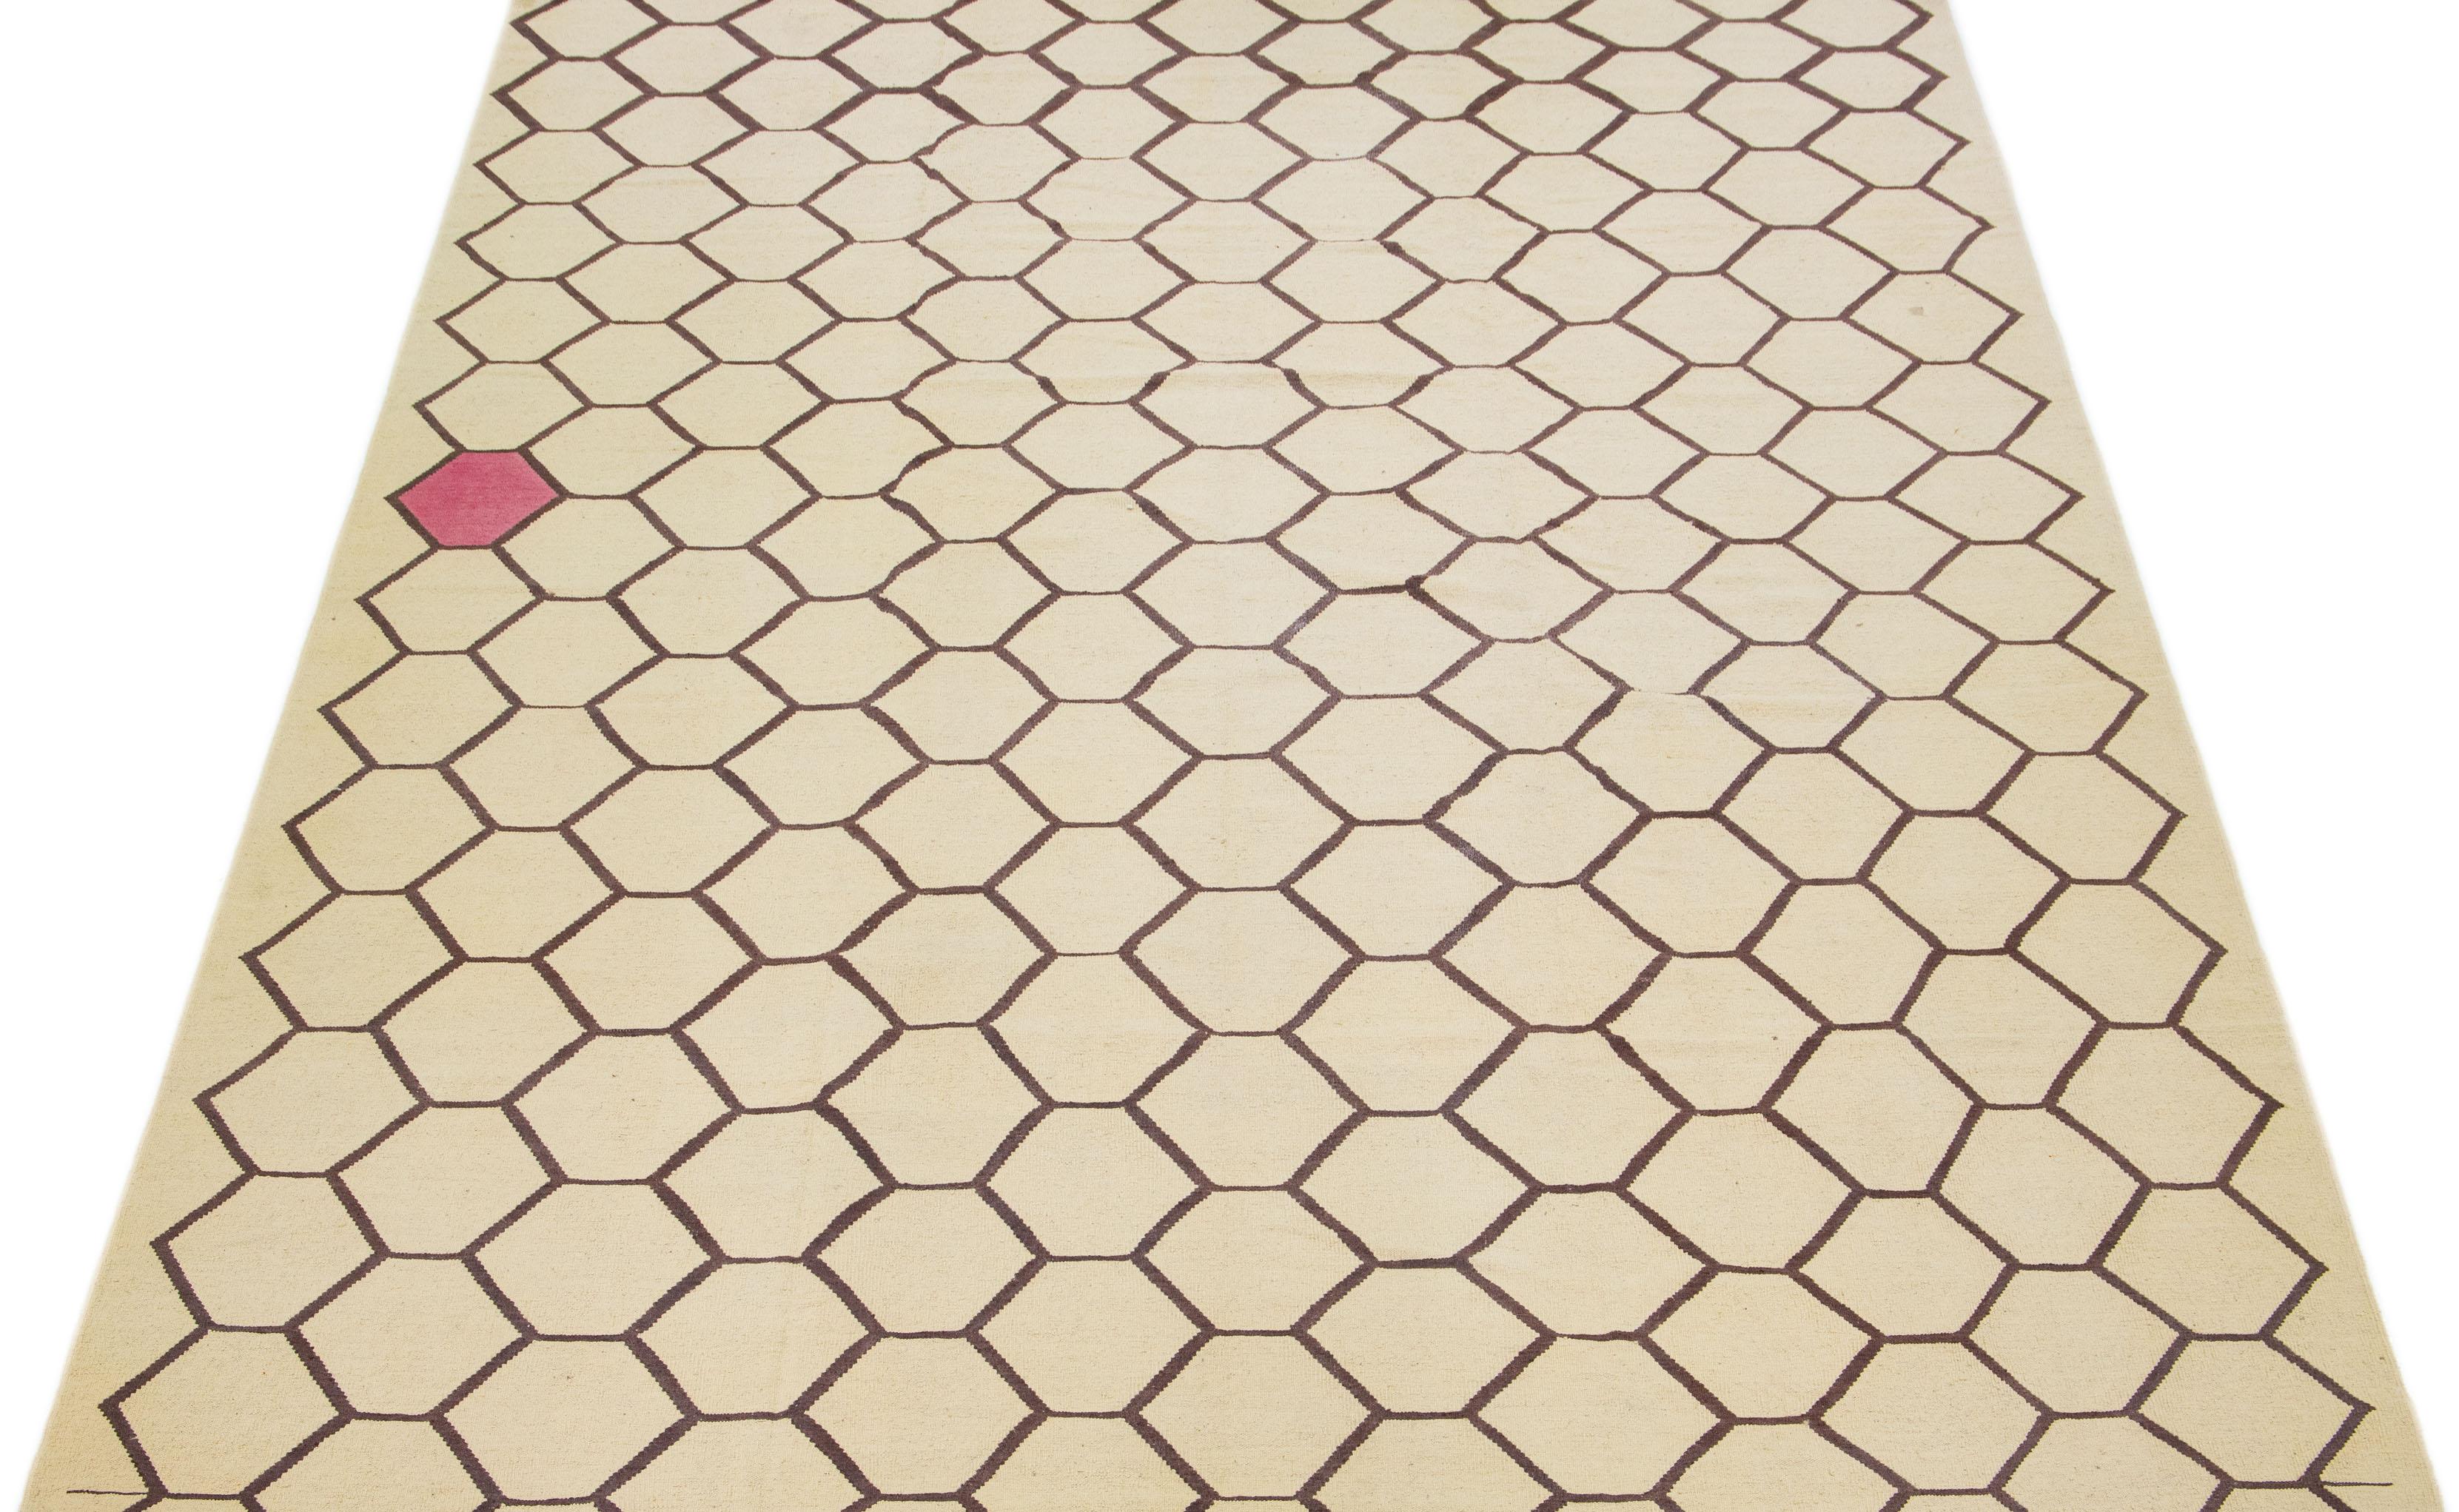 Dieser moderne Kilim-Teppich wurde fachmännisch von Hand geknüpft und besticht durch ein beigefarbenes Feldmuster, das durch subtile Braun- und Rosatöne innerhalb des geometrischen Musters ergänzt wird.

Dieser Teppich misst 10'4